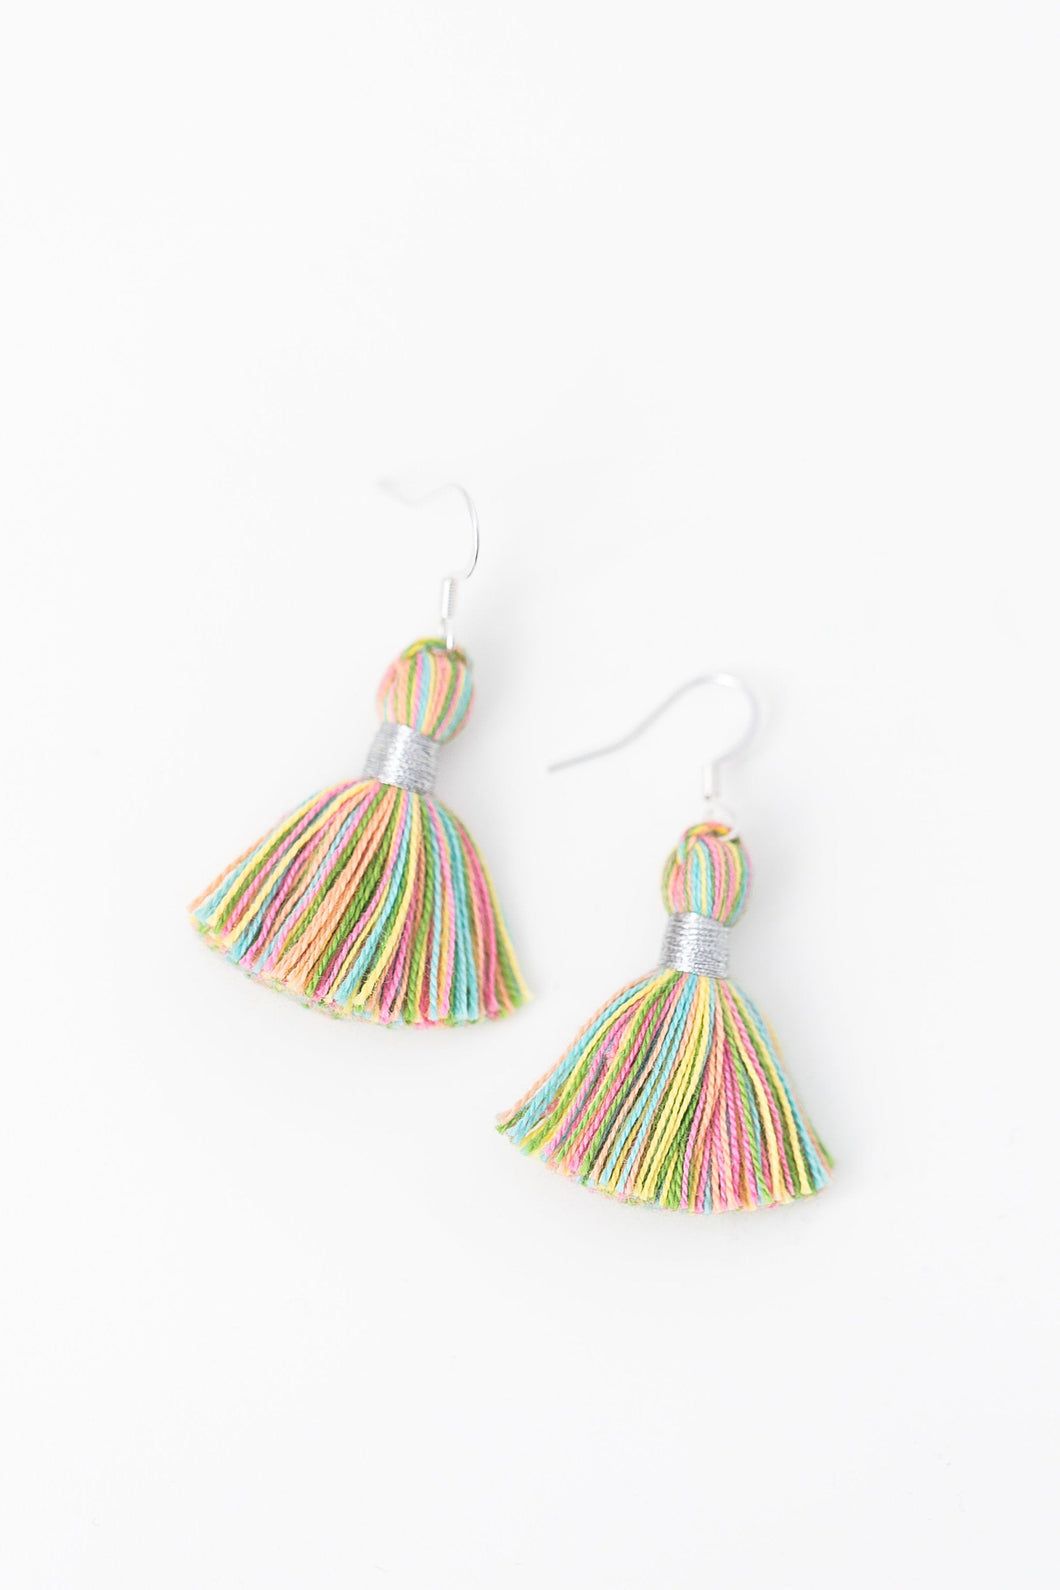 THE LYNN SILVER 1-1/4” pastel multi-color tassel earrings